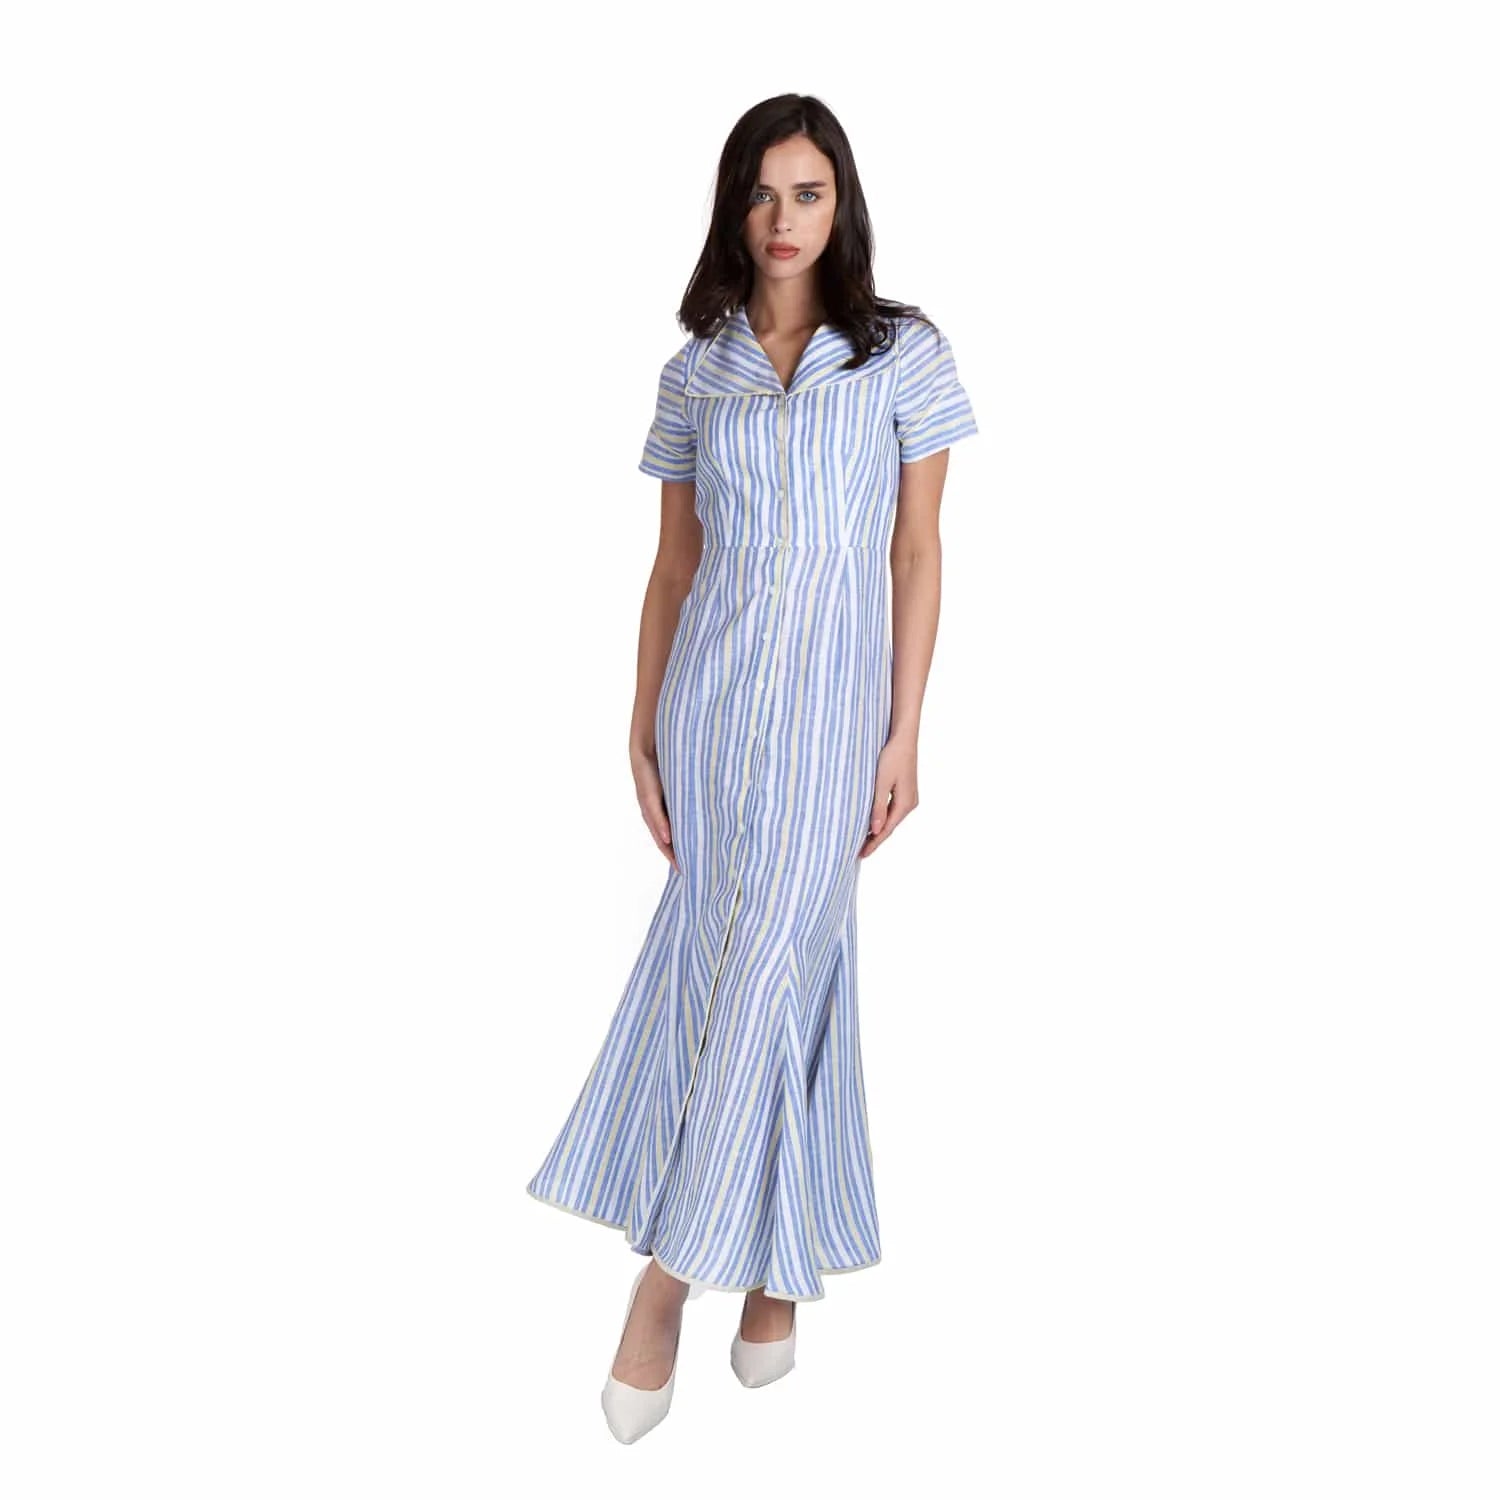 Striped linen dress - Dress